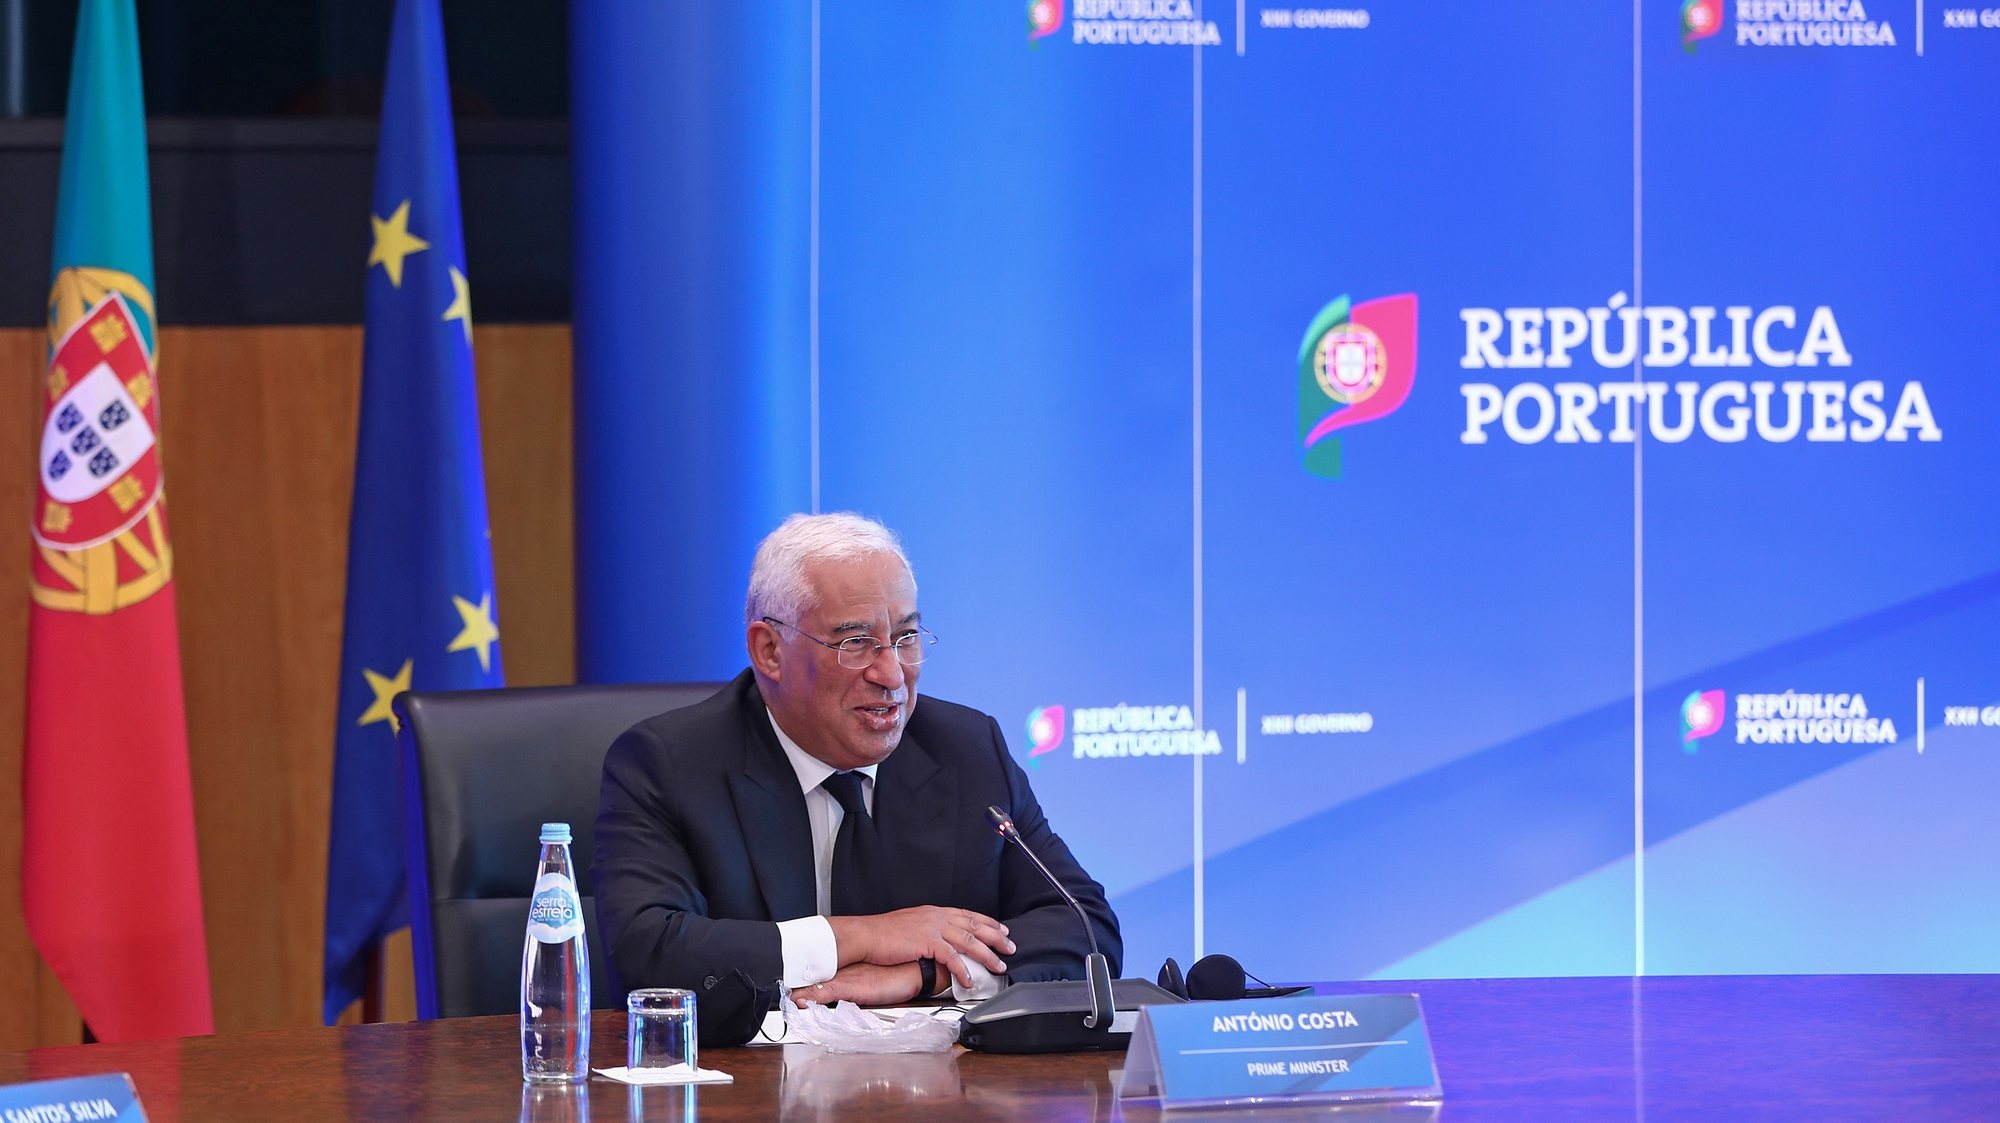 O primeiro-ministro, António Costa, durante uma reunião por videoconferência com o Presidente do Parlamento Europeu, David-Maria Sassoli, em Lisboa 02 de dezembro de 2020. Portugal assumirá a presidência da União Europeia em 01 de janeiro de 2021, sucedendo à Alemanha. ANTÓNIO PEDRO SANTOS/LUSA